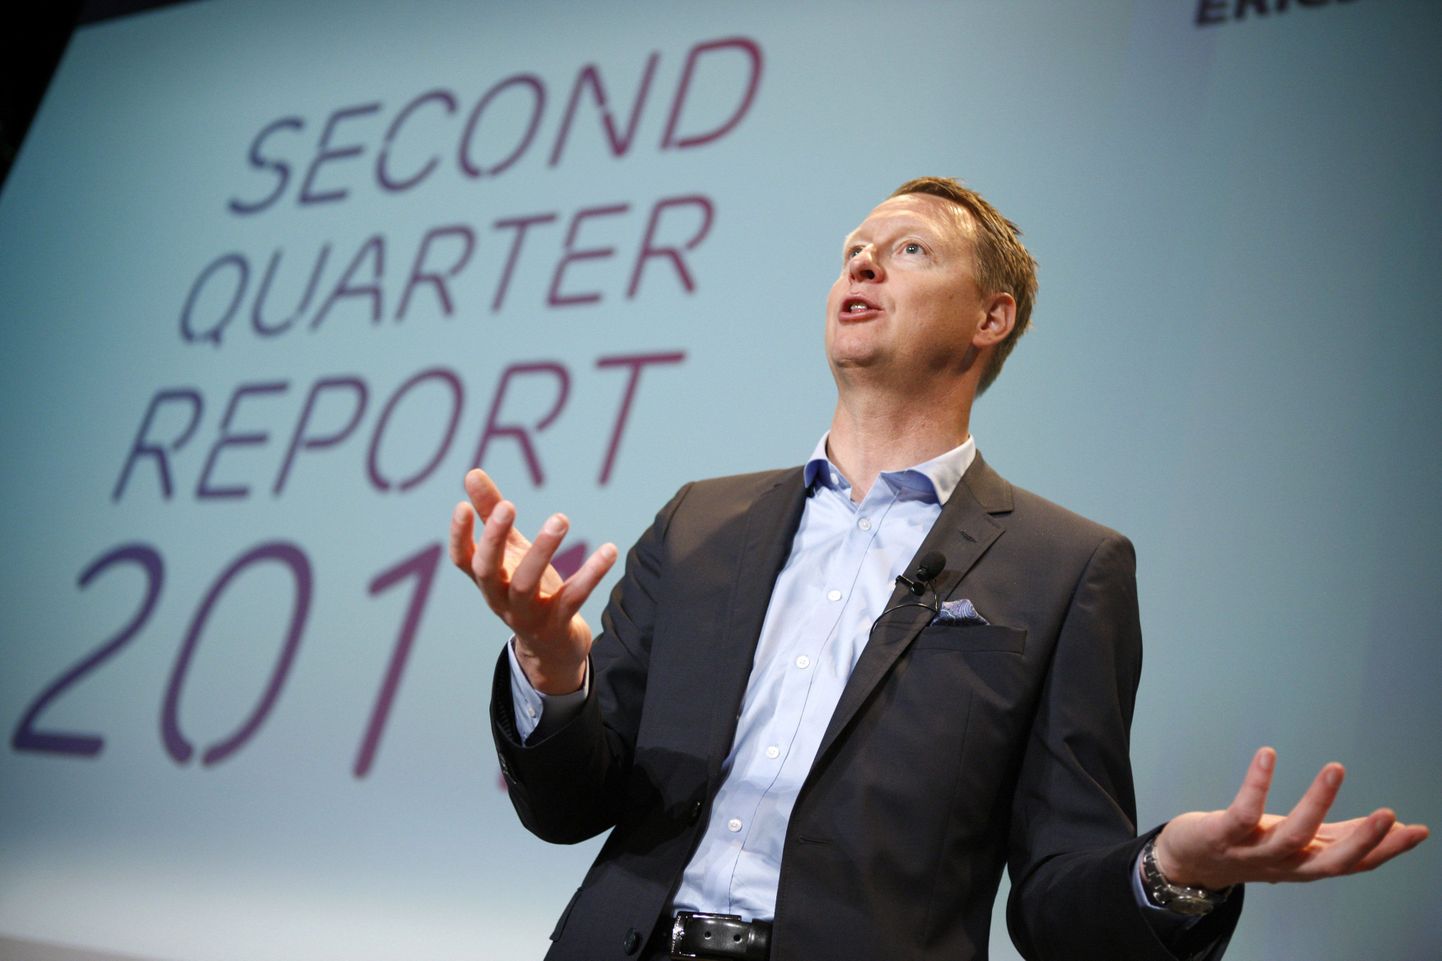 Ericssoni juhatuse esimees Hans Vestberg eile ajakirjanikele ettevõtte oodatust kehvemaid teise kvartali tulemusi tutvustamas.